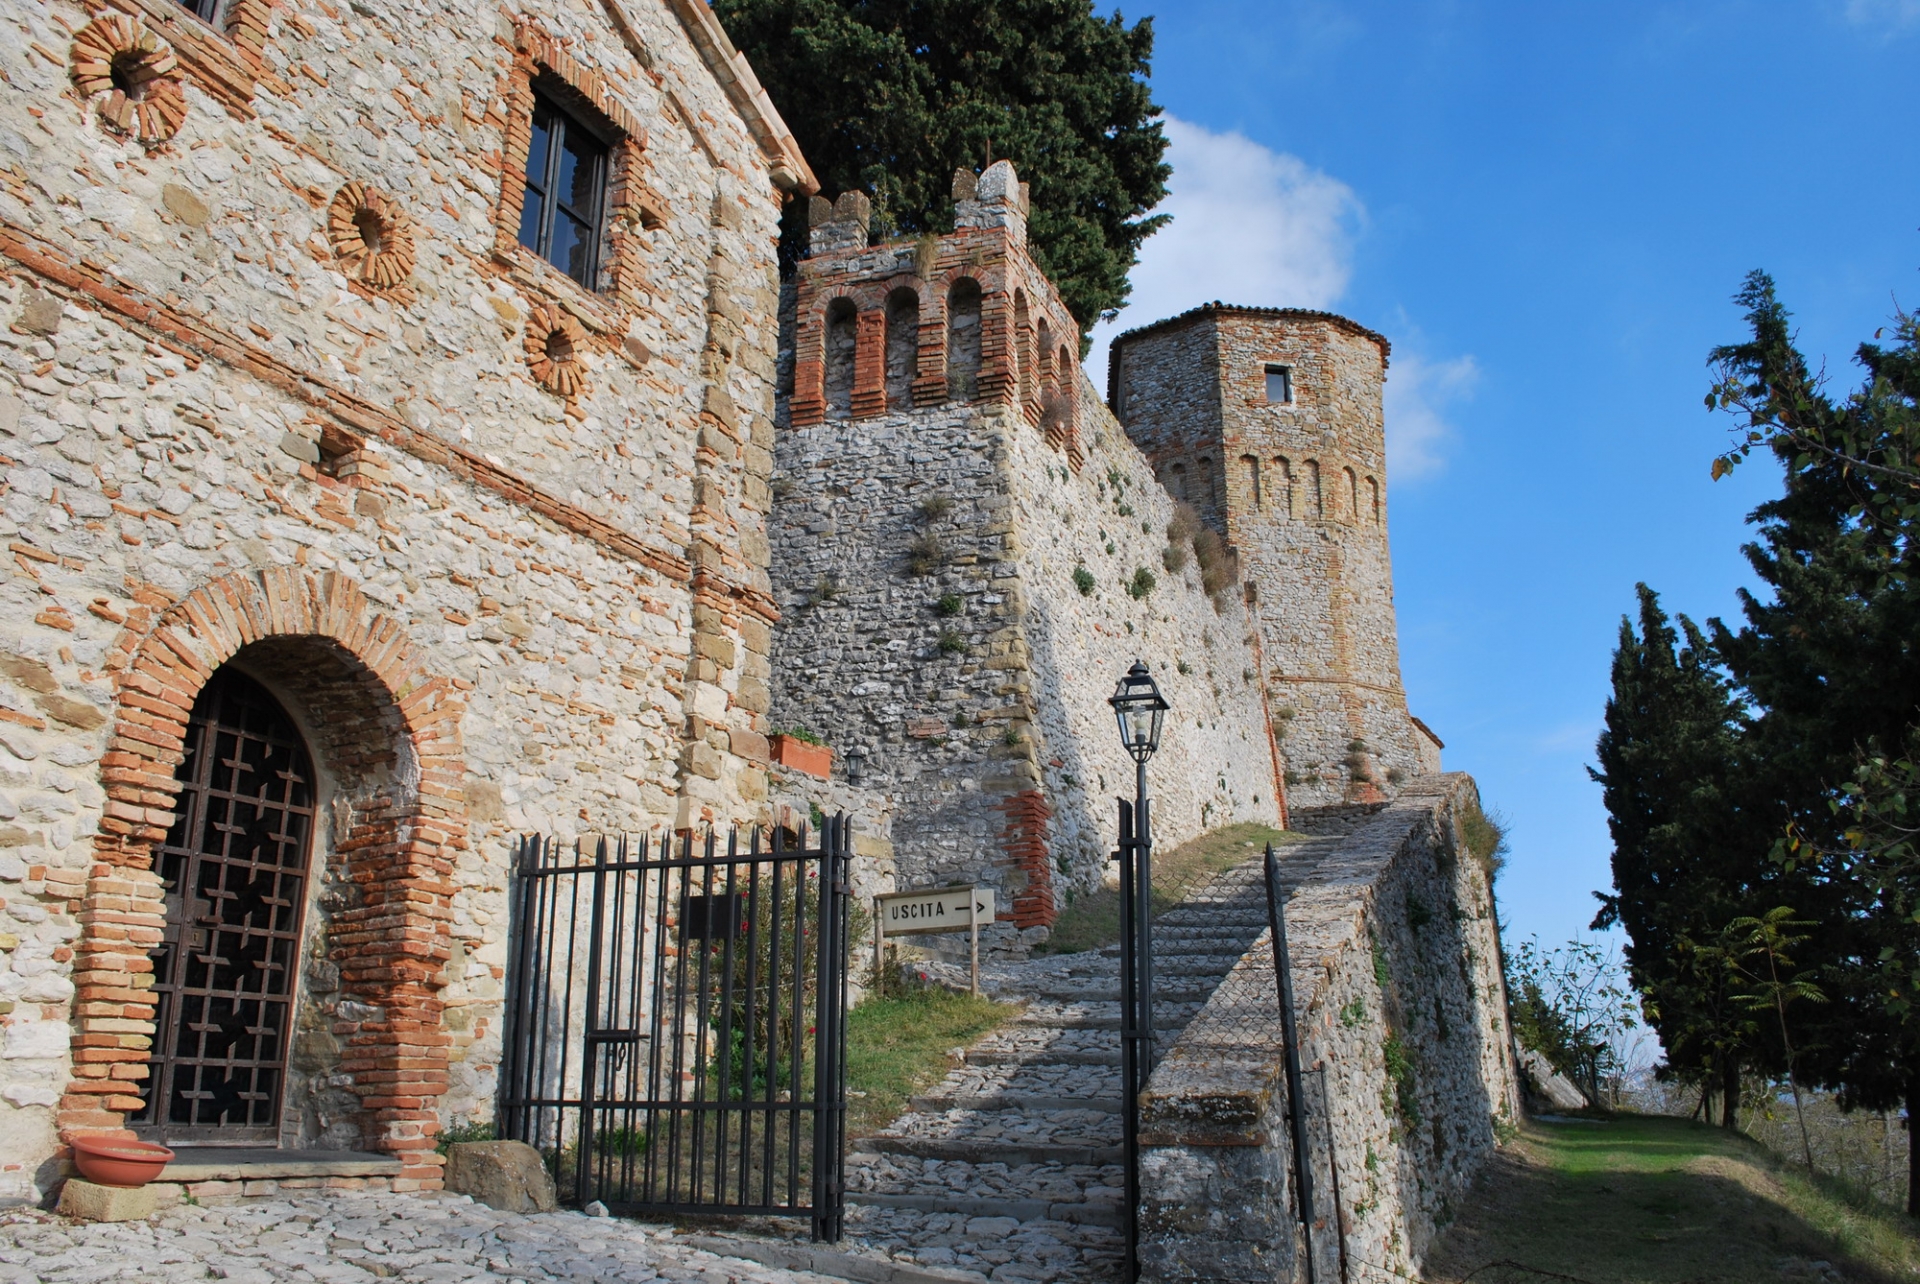 Castello di Montebello photos de Condello Daniela